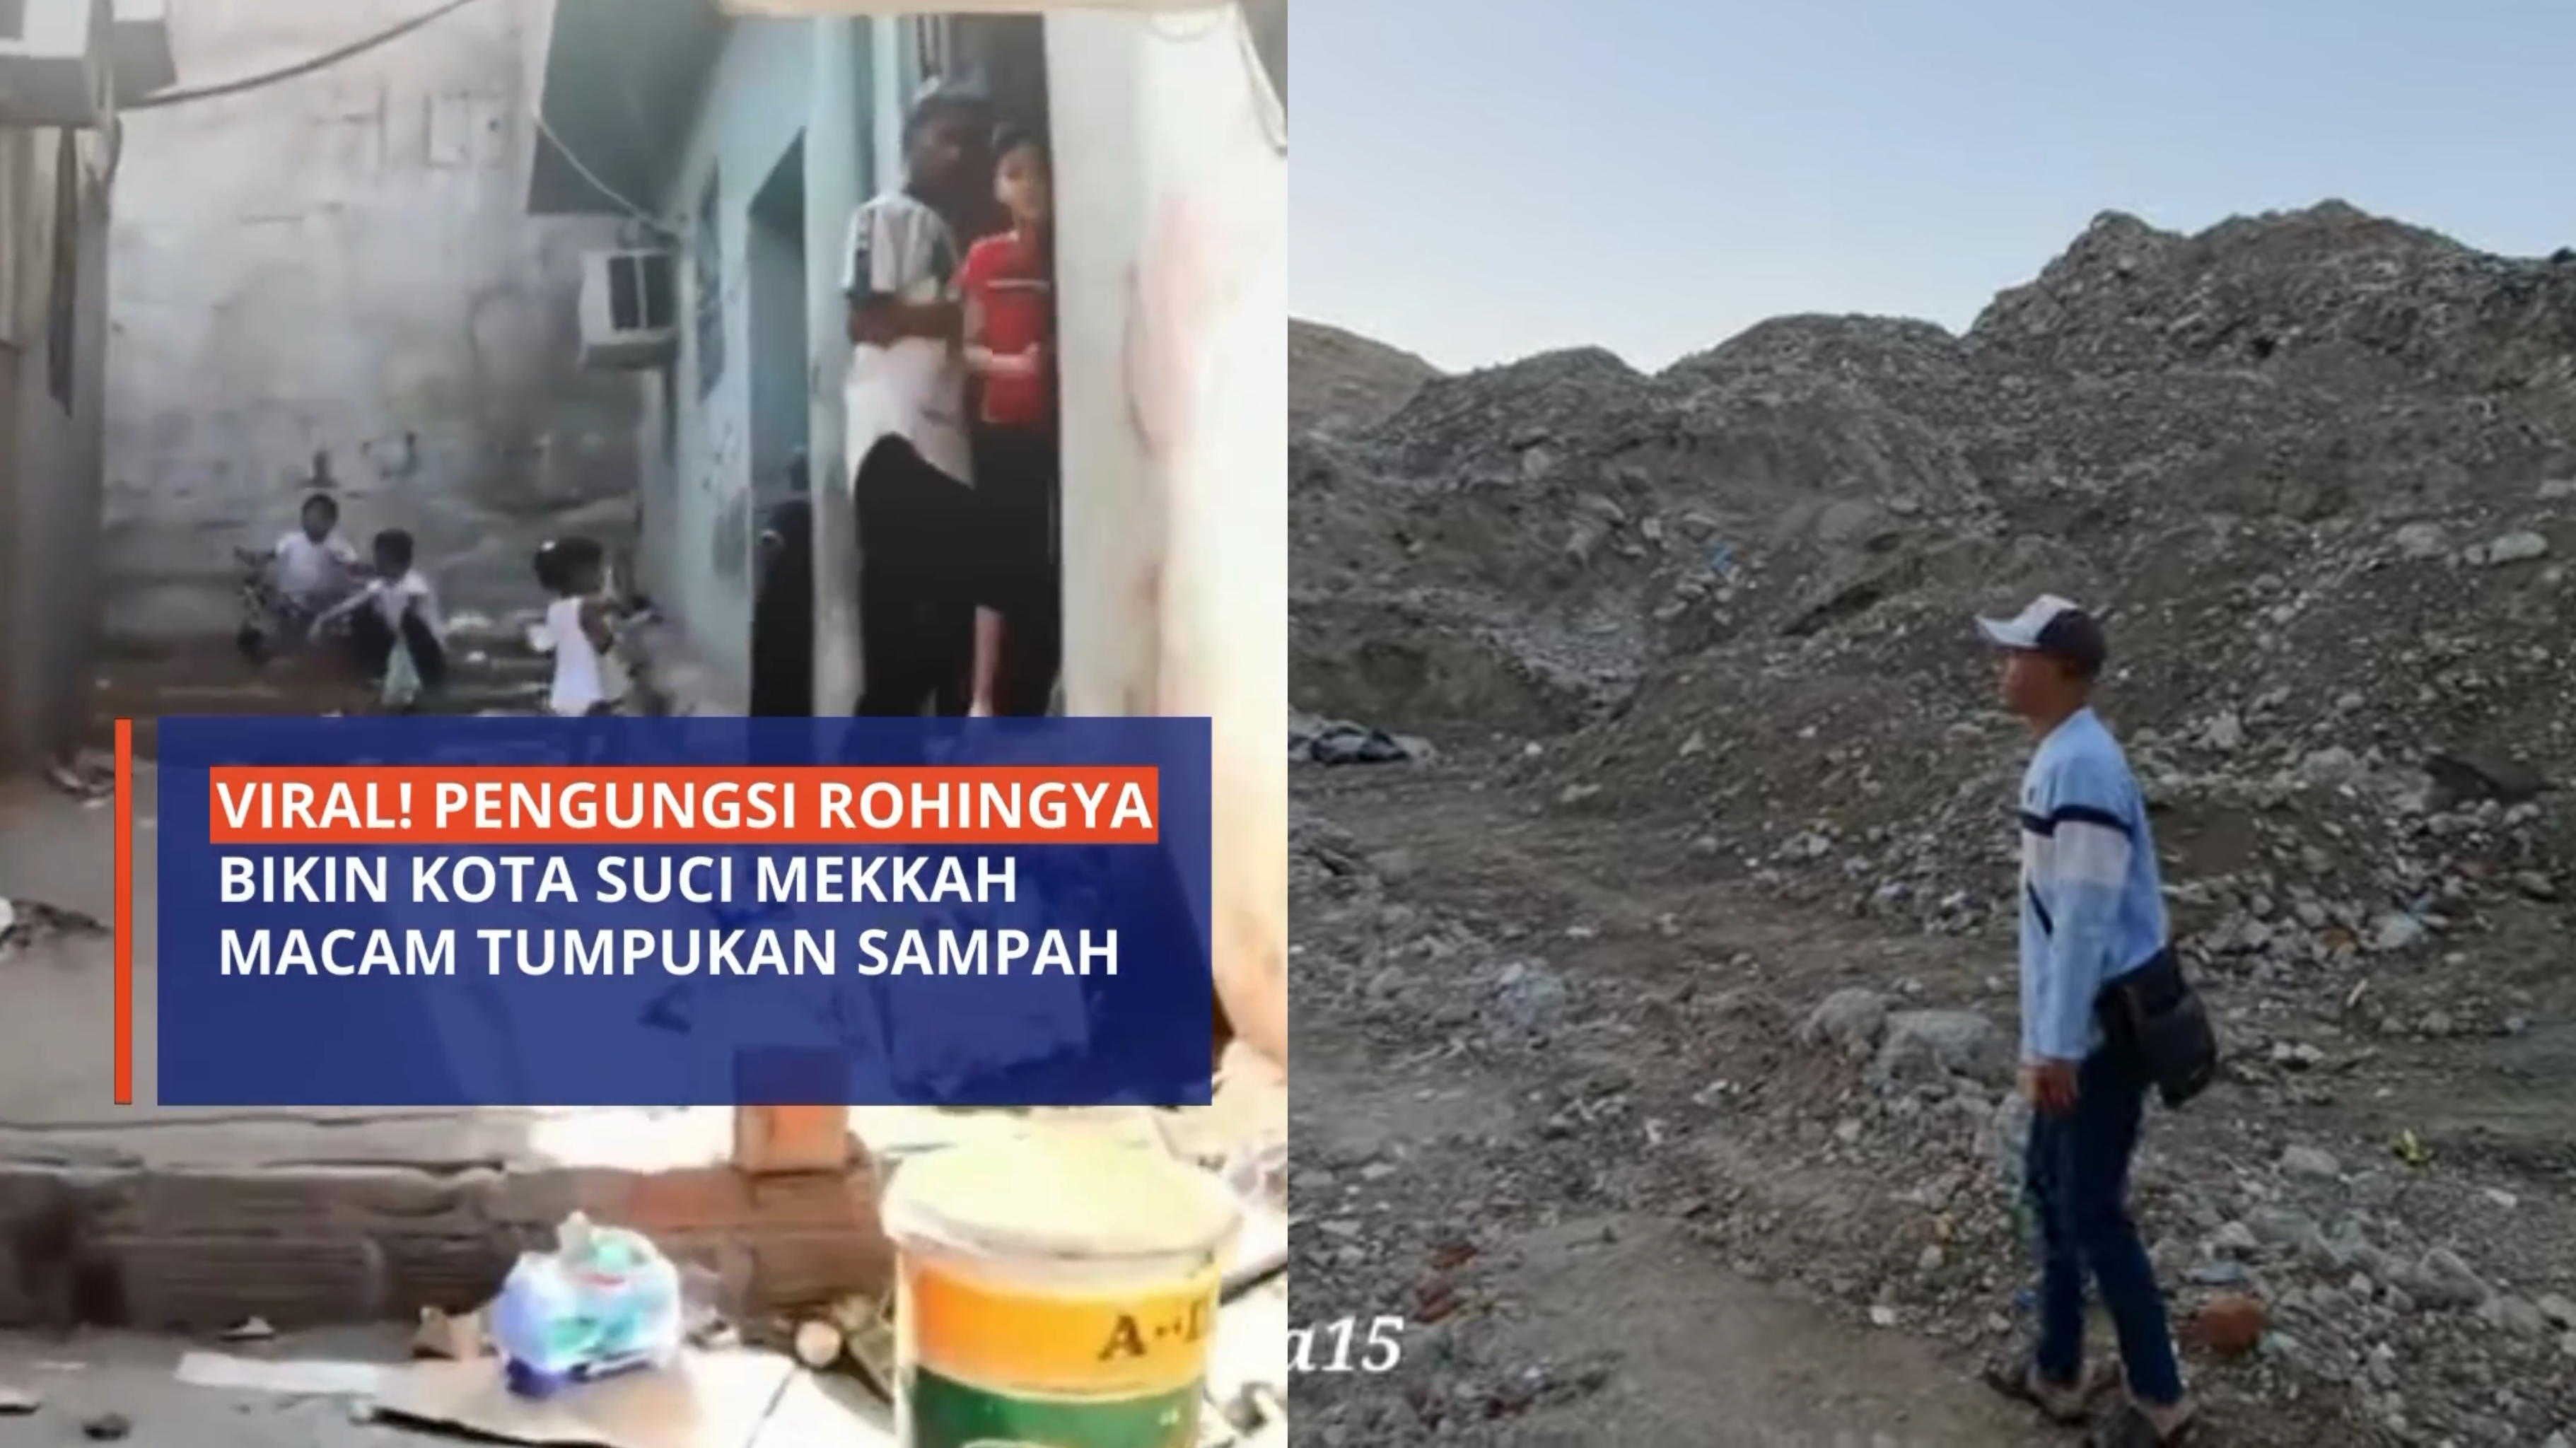 Viral! Pengungsi Rohingya Bikin Kota Suci Mekkah Macam Tumpukan Sampah